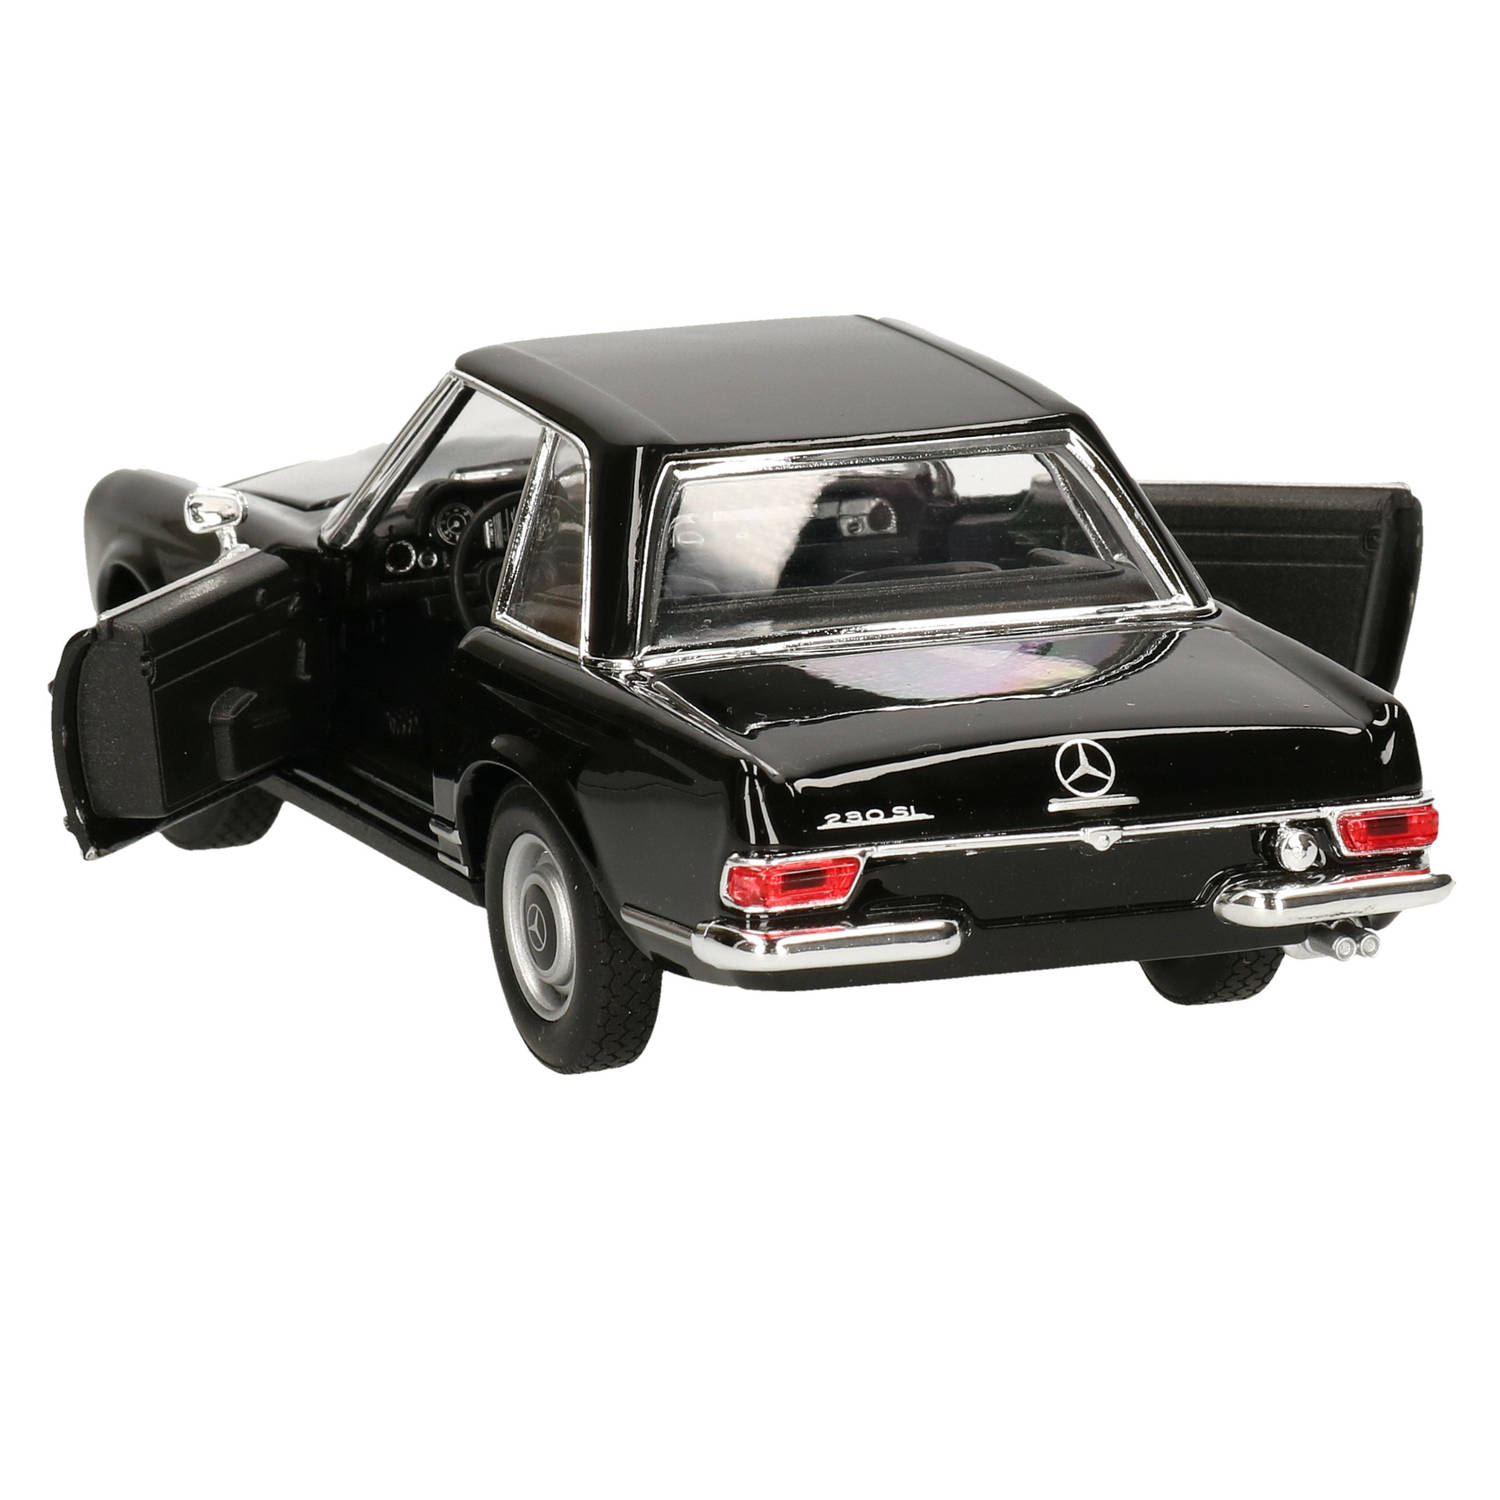 Modelauto/speelgoedauto Mercedes-Benz 230SL 1963 schaal 1:24/18 x 7 x 5 cm - Speelgoed auto's |